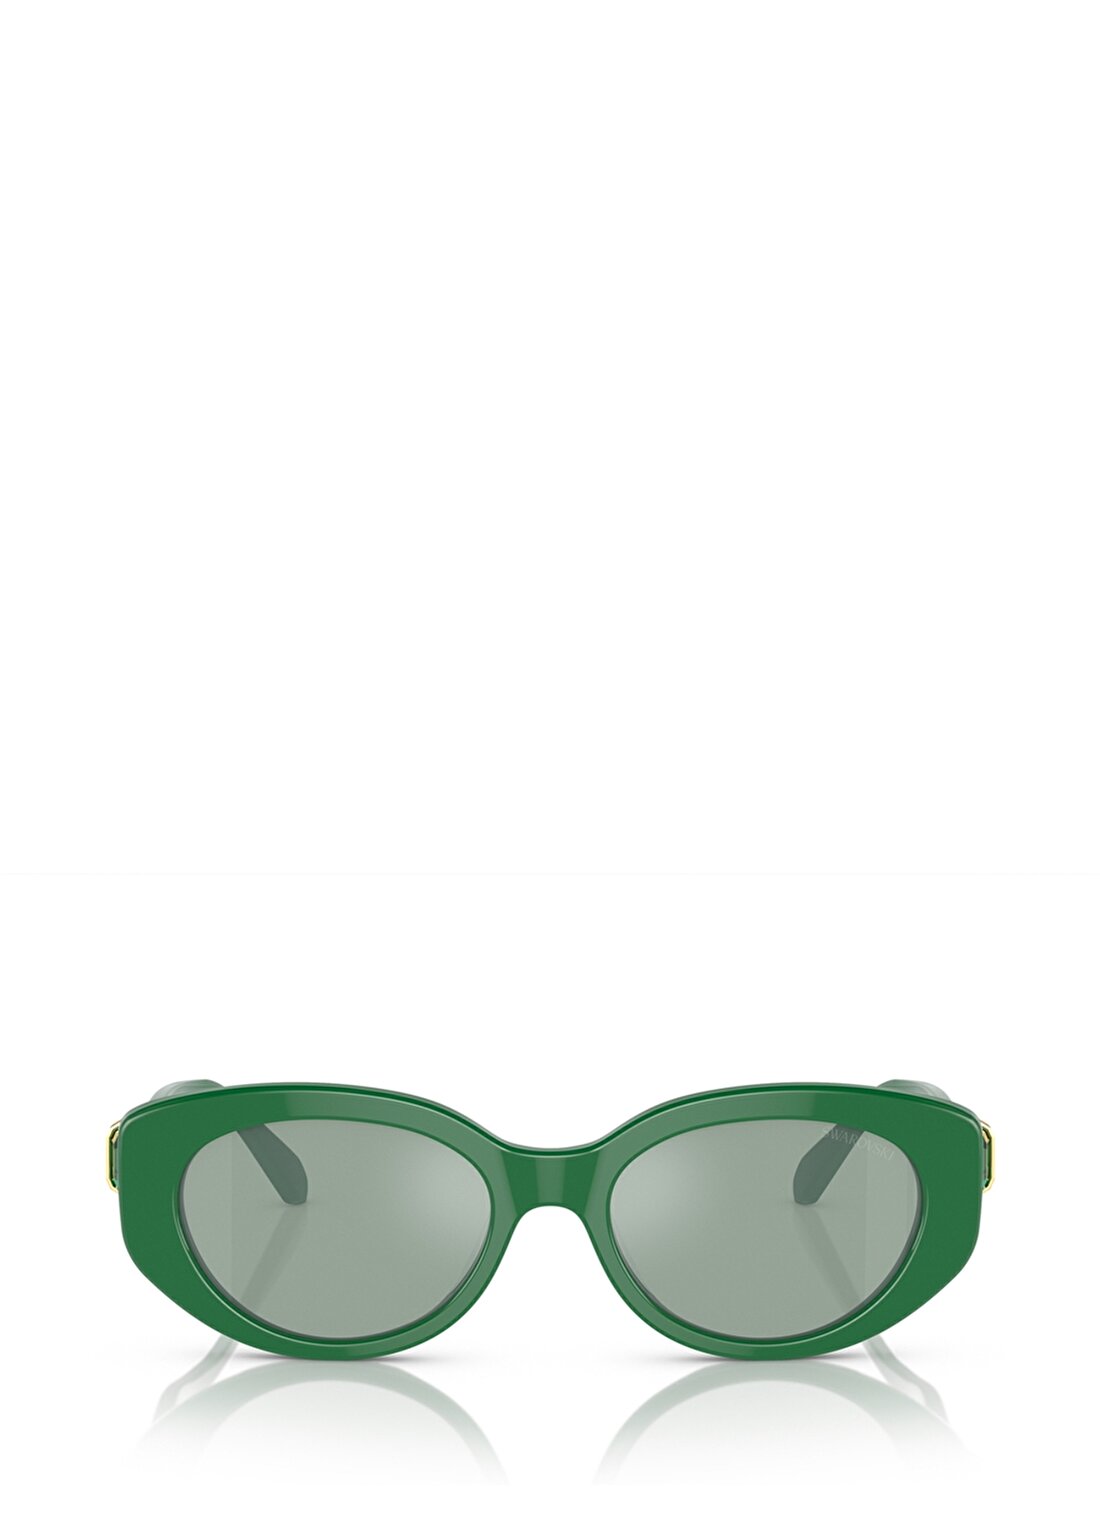 Swarovski SK6002 Oval Yeşil Kadın Güneş Gözlüğü